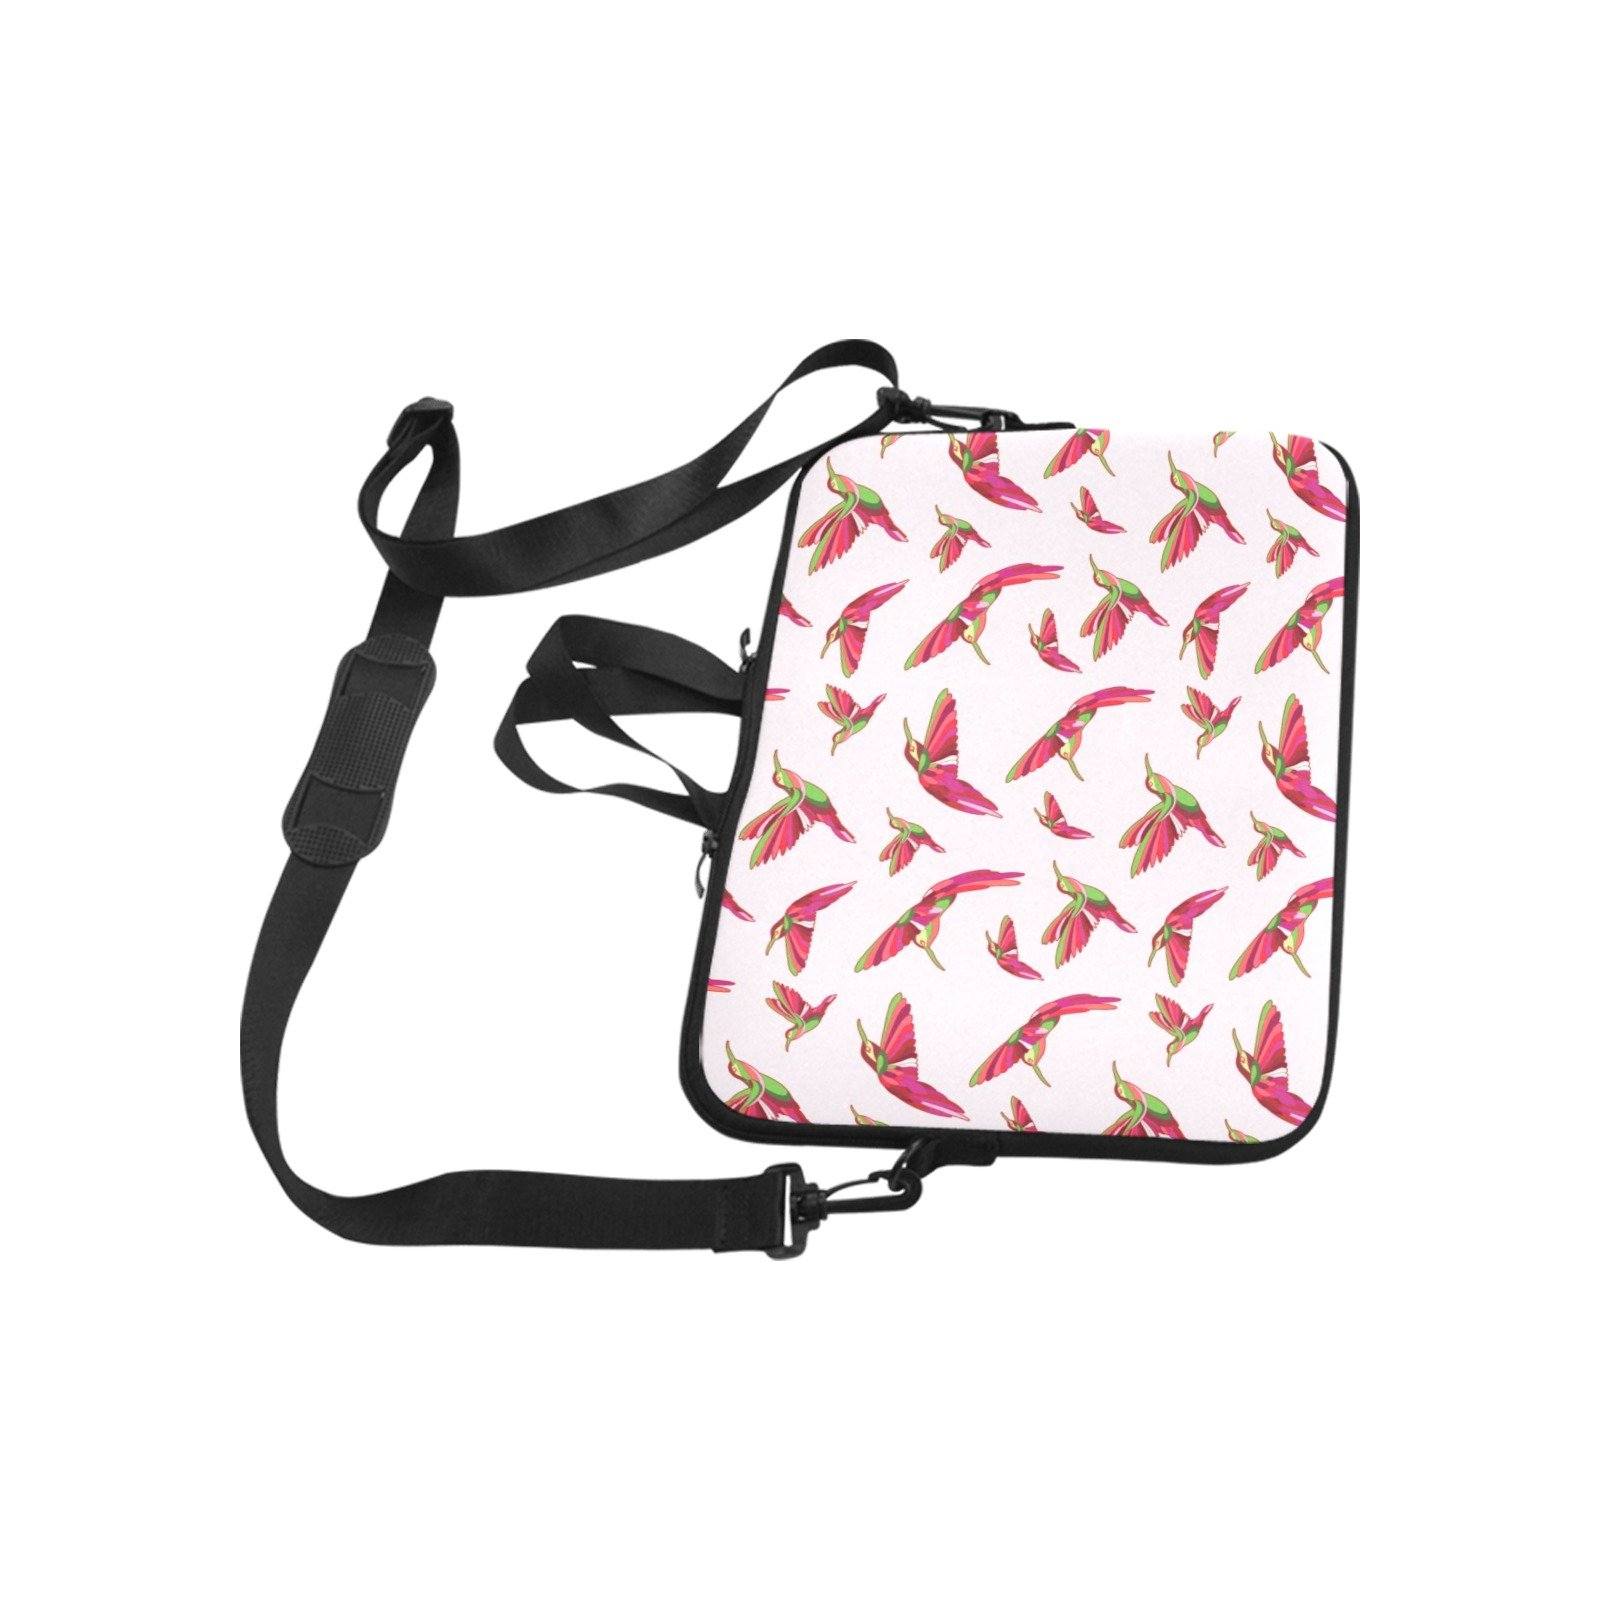 Red Swift Colourful Laptop Handbags 17" bag e-joyer 